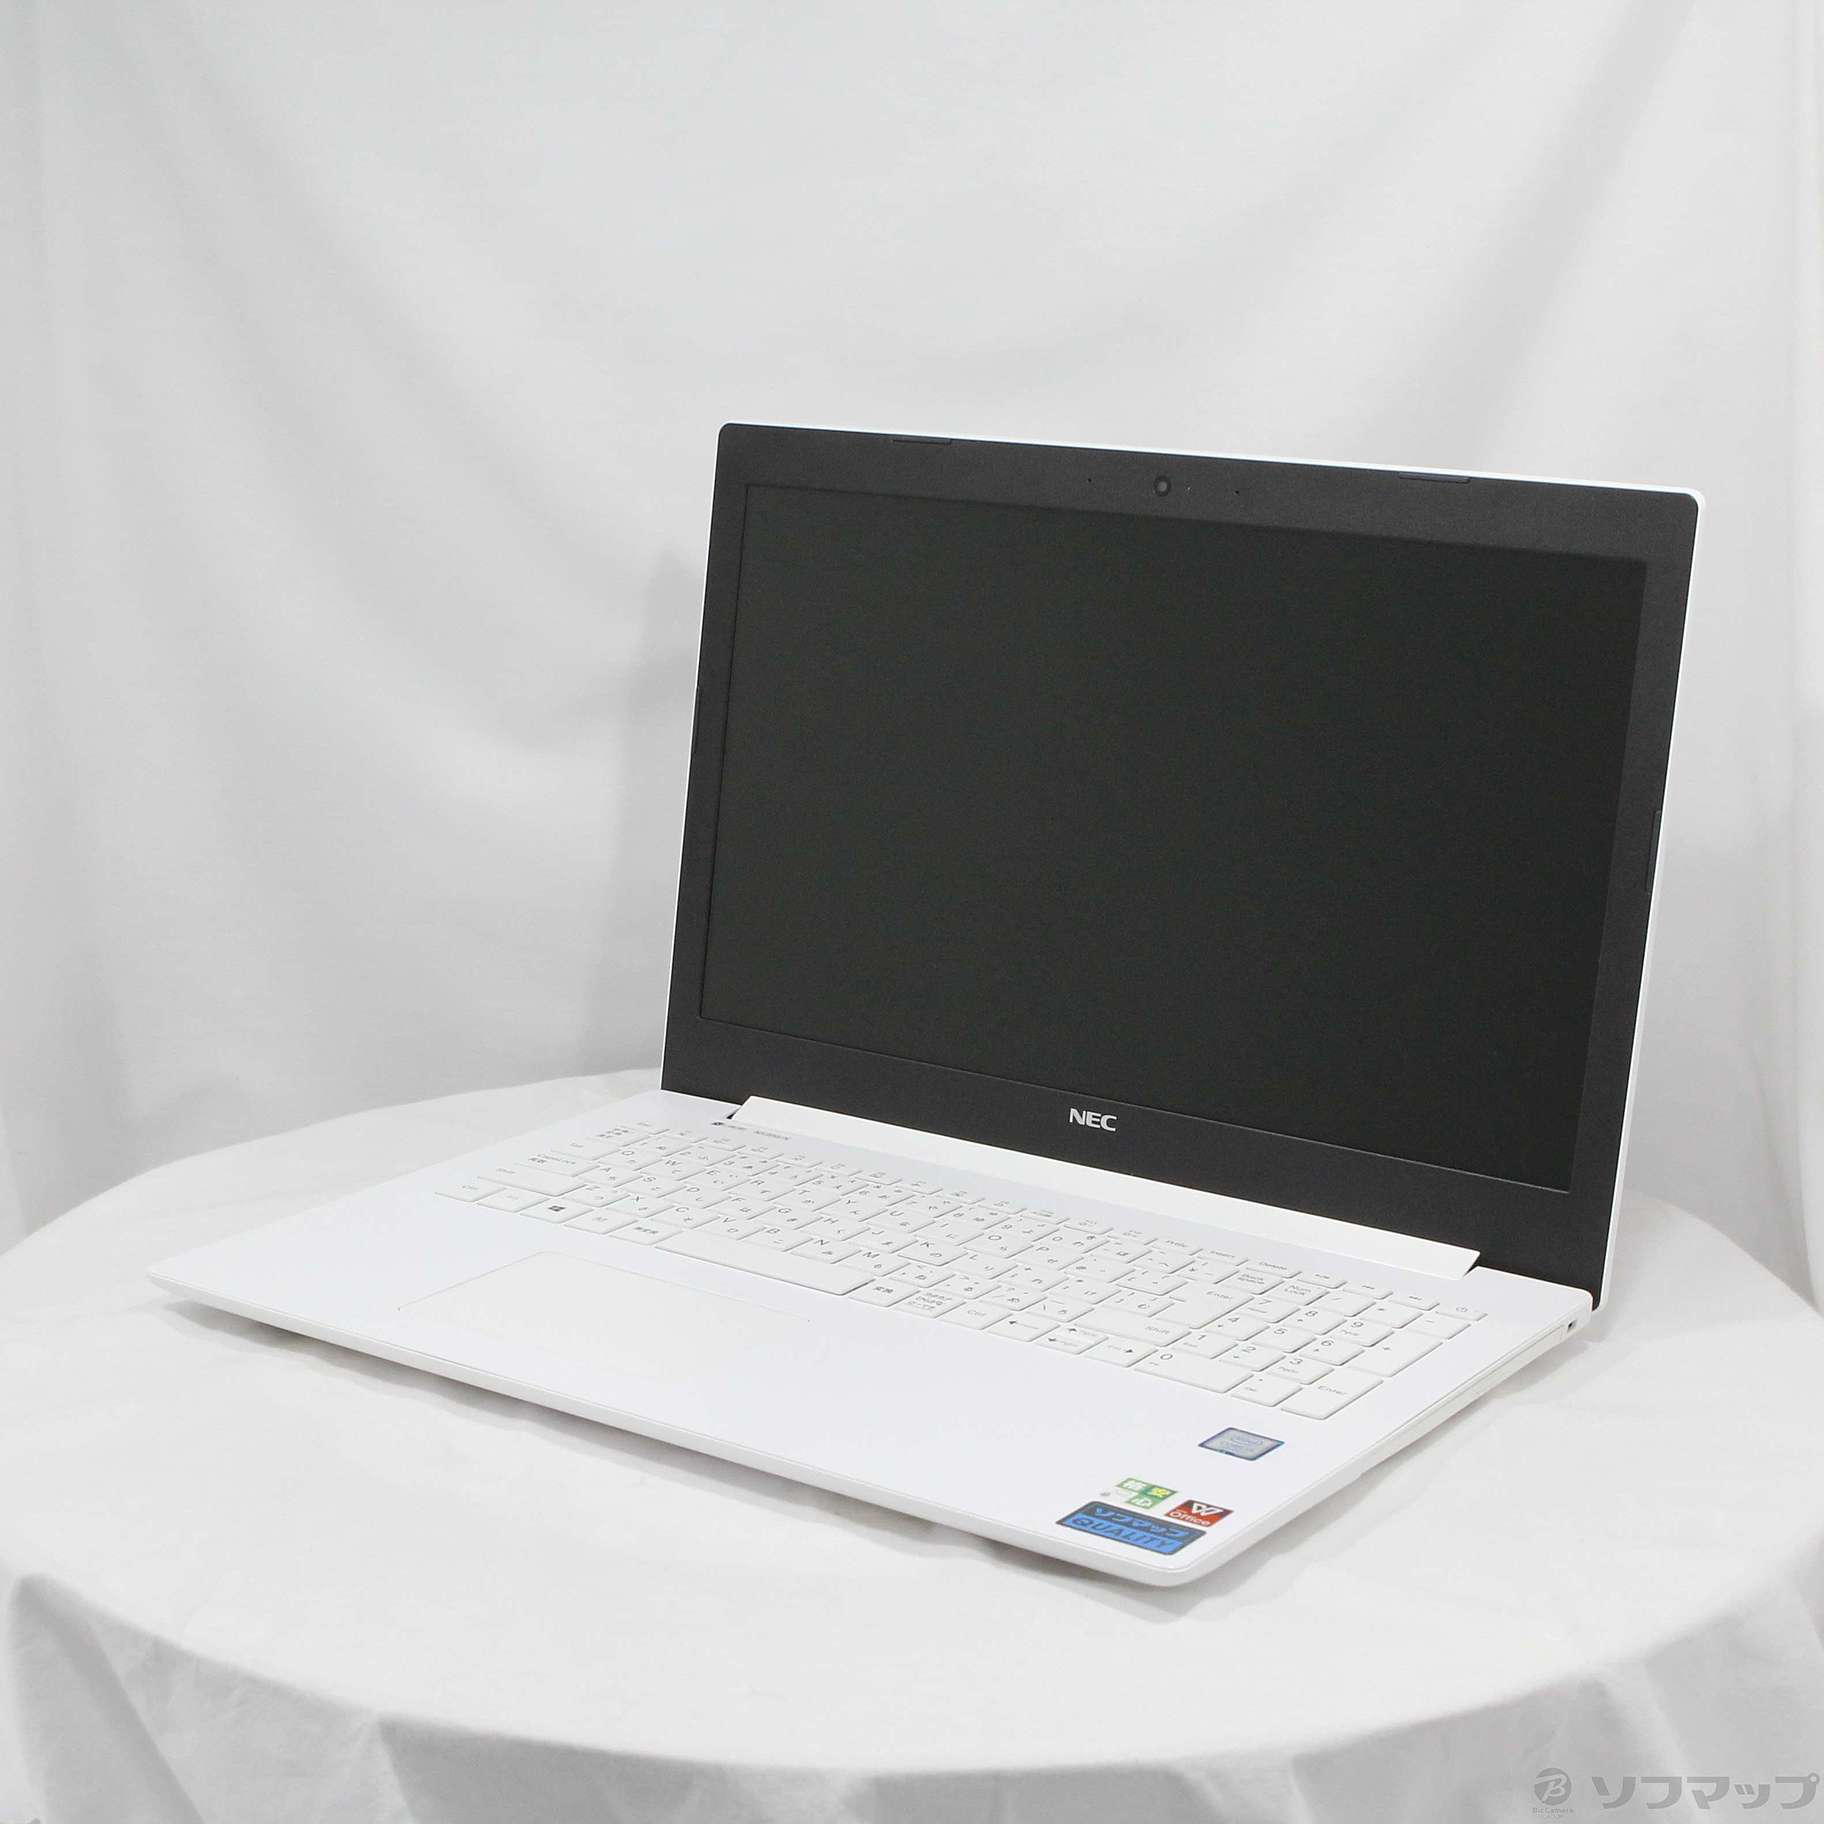 NEC ノートパソコン PC-NS300KAW-E3 - パソコン